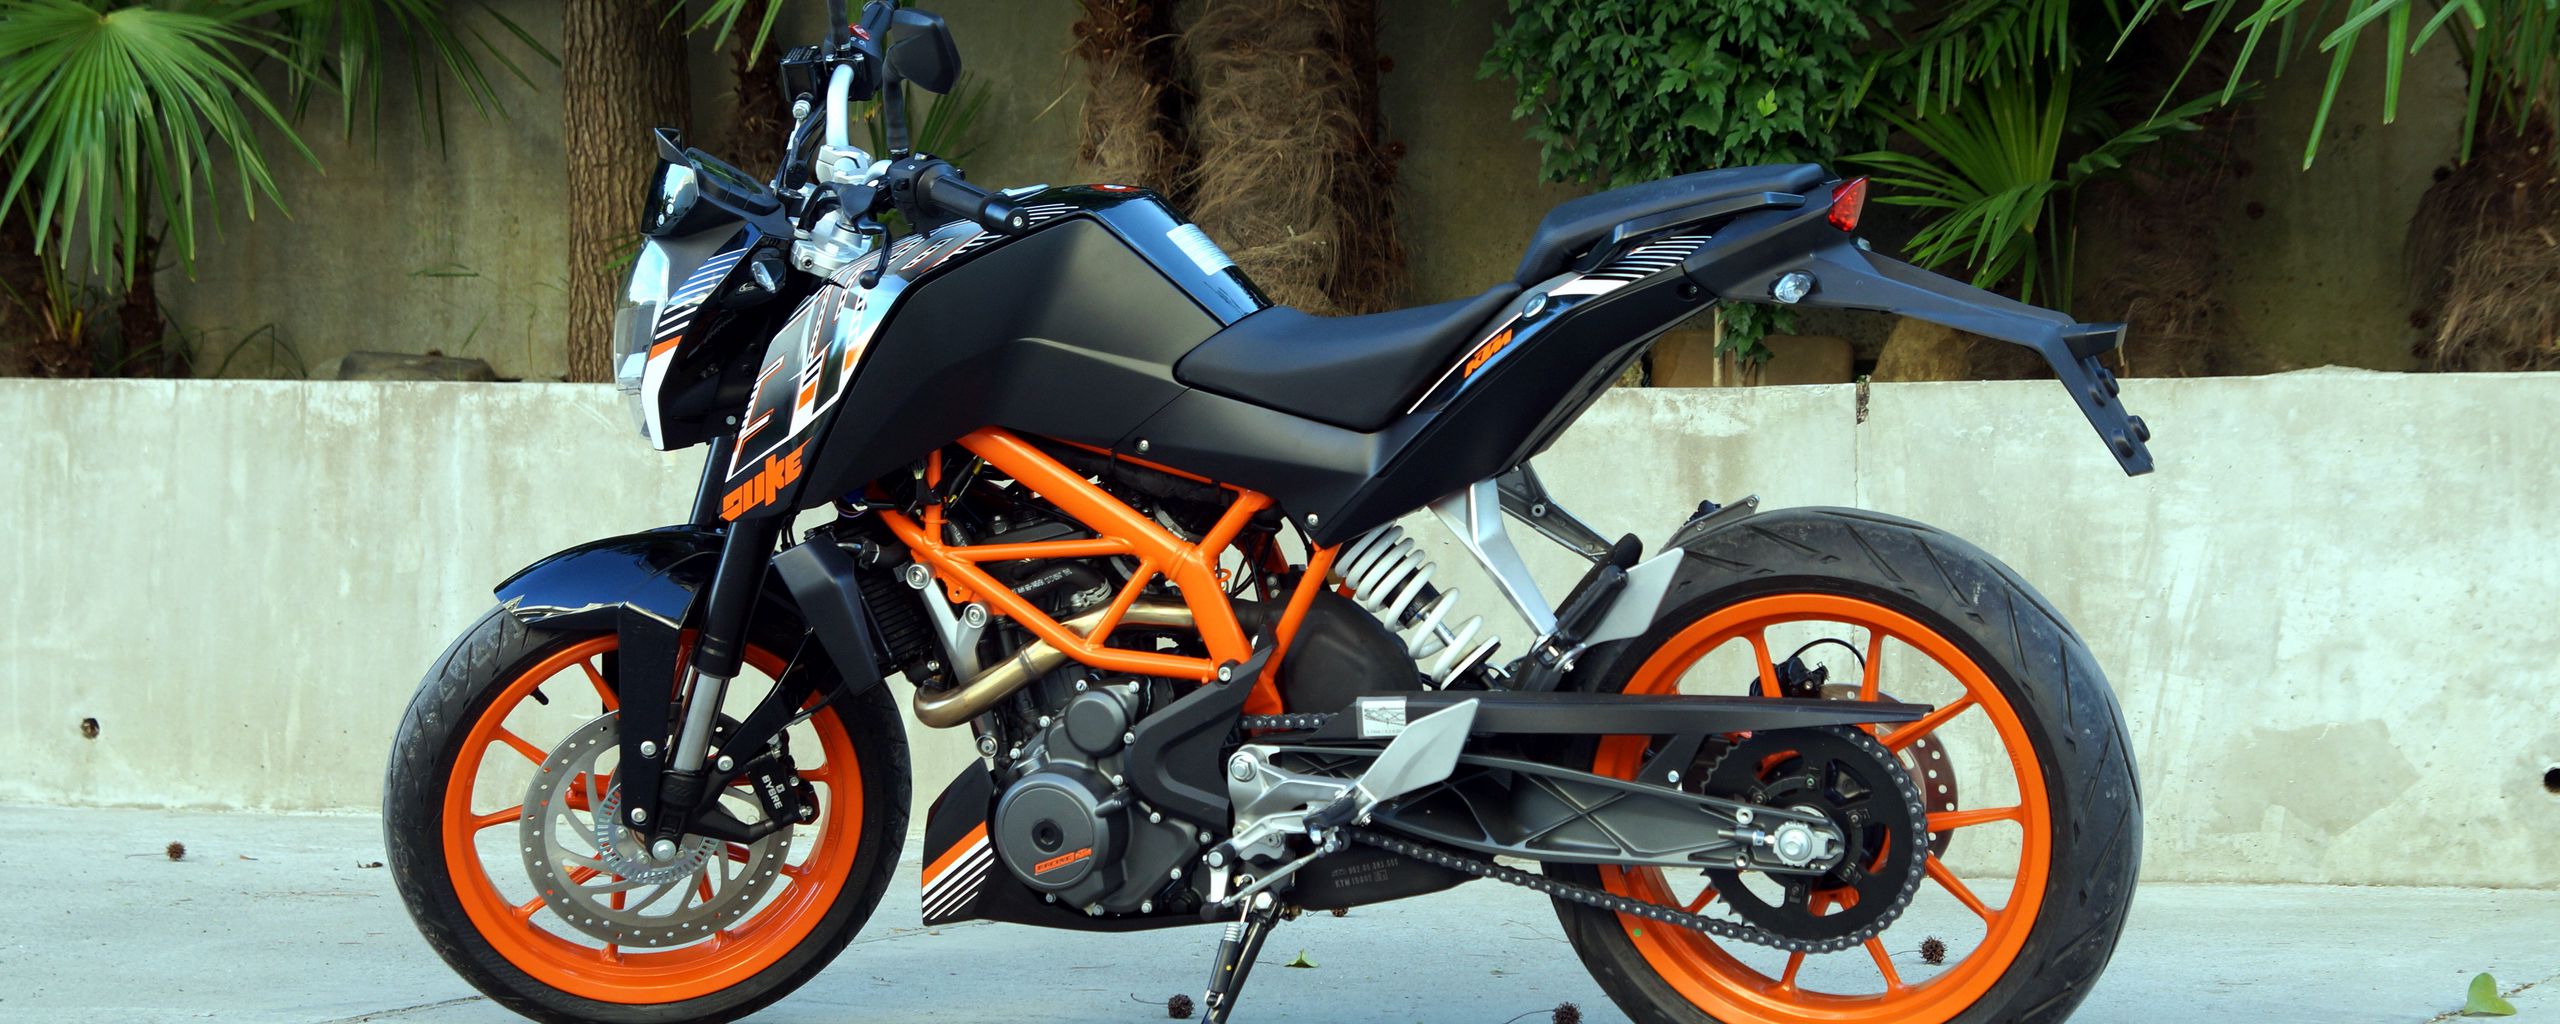 2560x1024 Wallpaper ktm, motorcycle, bike, black, orange, moto